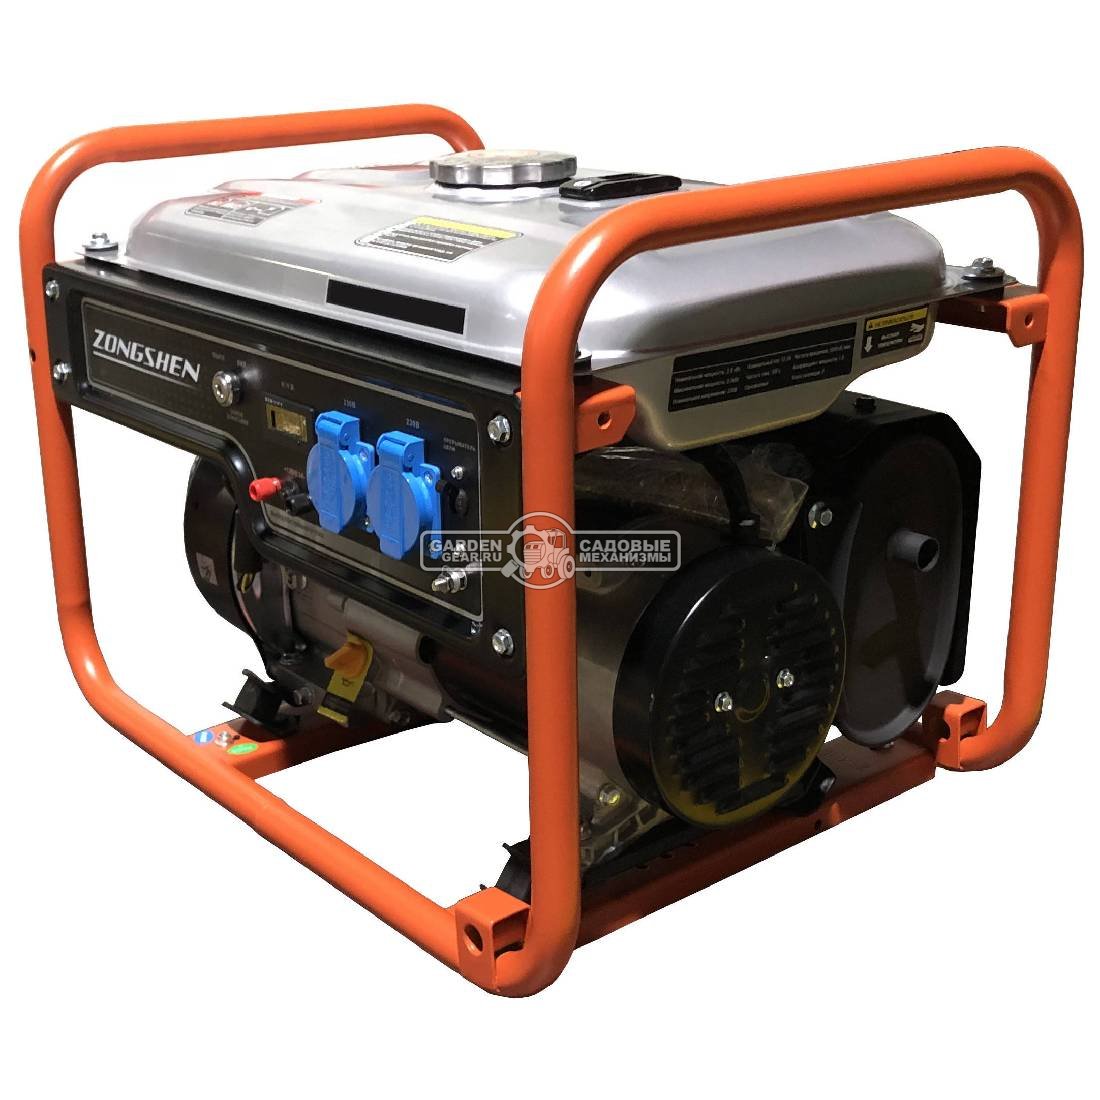 Бензиновый генератор Zongshen Standart PB 2500 (PRC, 208 см3, 2.0/2.2 кВт, 15 л, 38.5 кг)